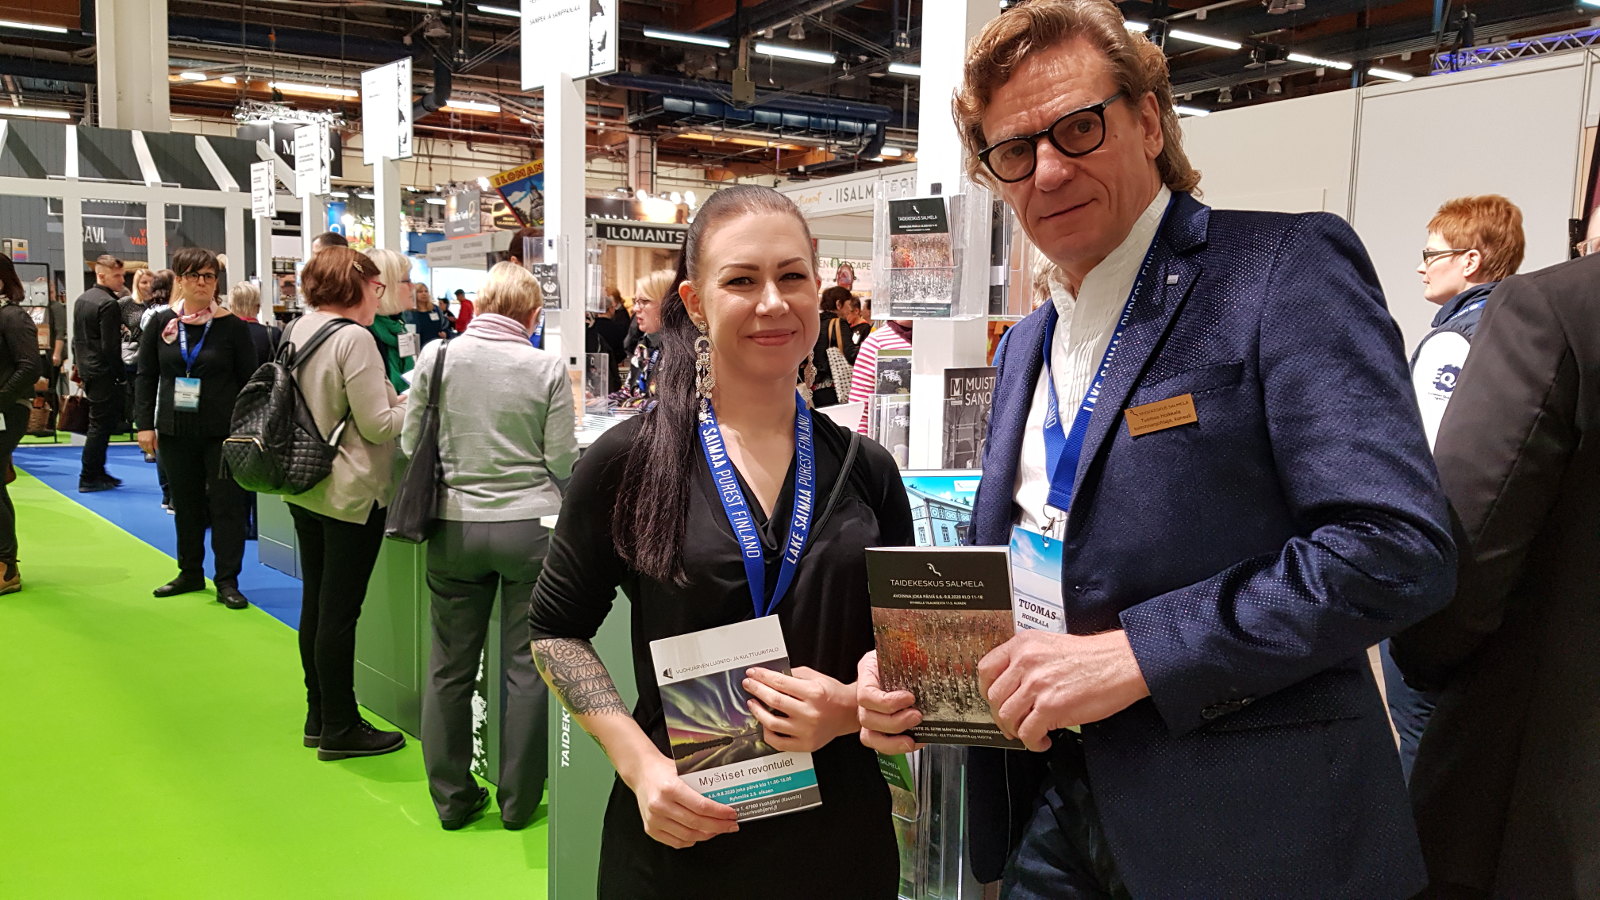 Kuvassa ovat Heidi Tuovinen ja Tuomas Hoikkala edustamassa Taidekeskus Salmelaa  Helsingin matkamessuilla.  Heillä on kädessää esitteet ja taustalla näkyy vihreää mattoa ja muiden osallistujien esittelijöitä.